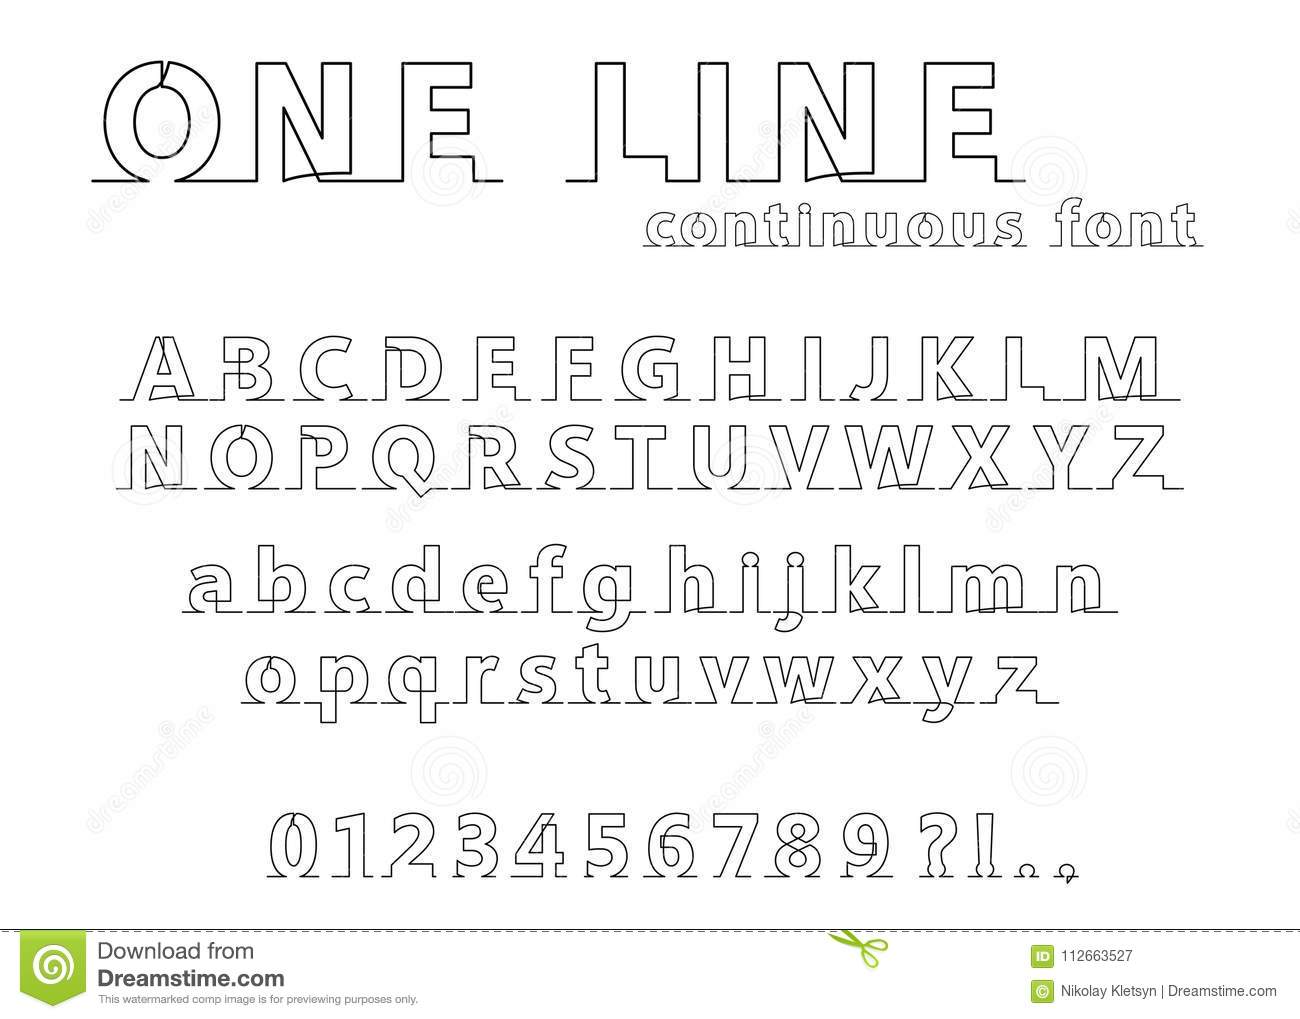 cnc single line font download